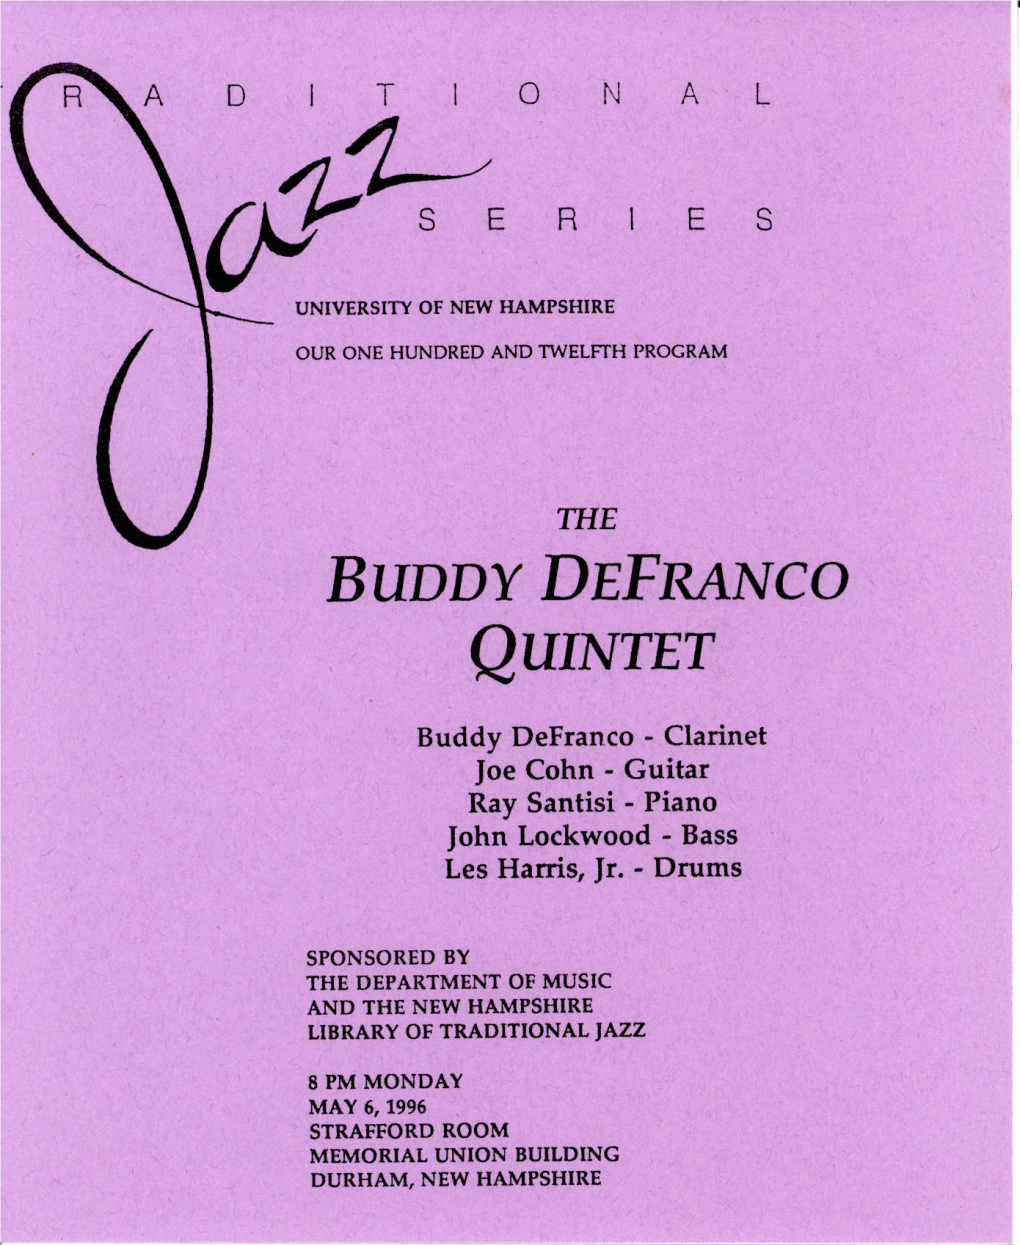 Qunrrrr Buddy Defranco- Clarinet Joe Cohn- Guitar Ray Santisi - Piano Fohnlockwood'bass Les Harris, Jr